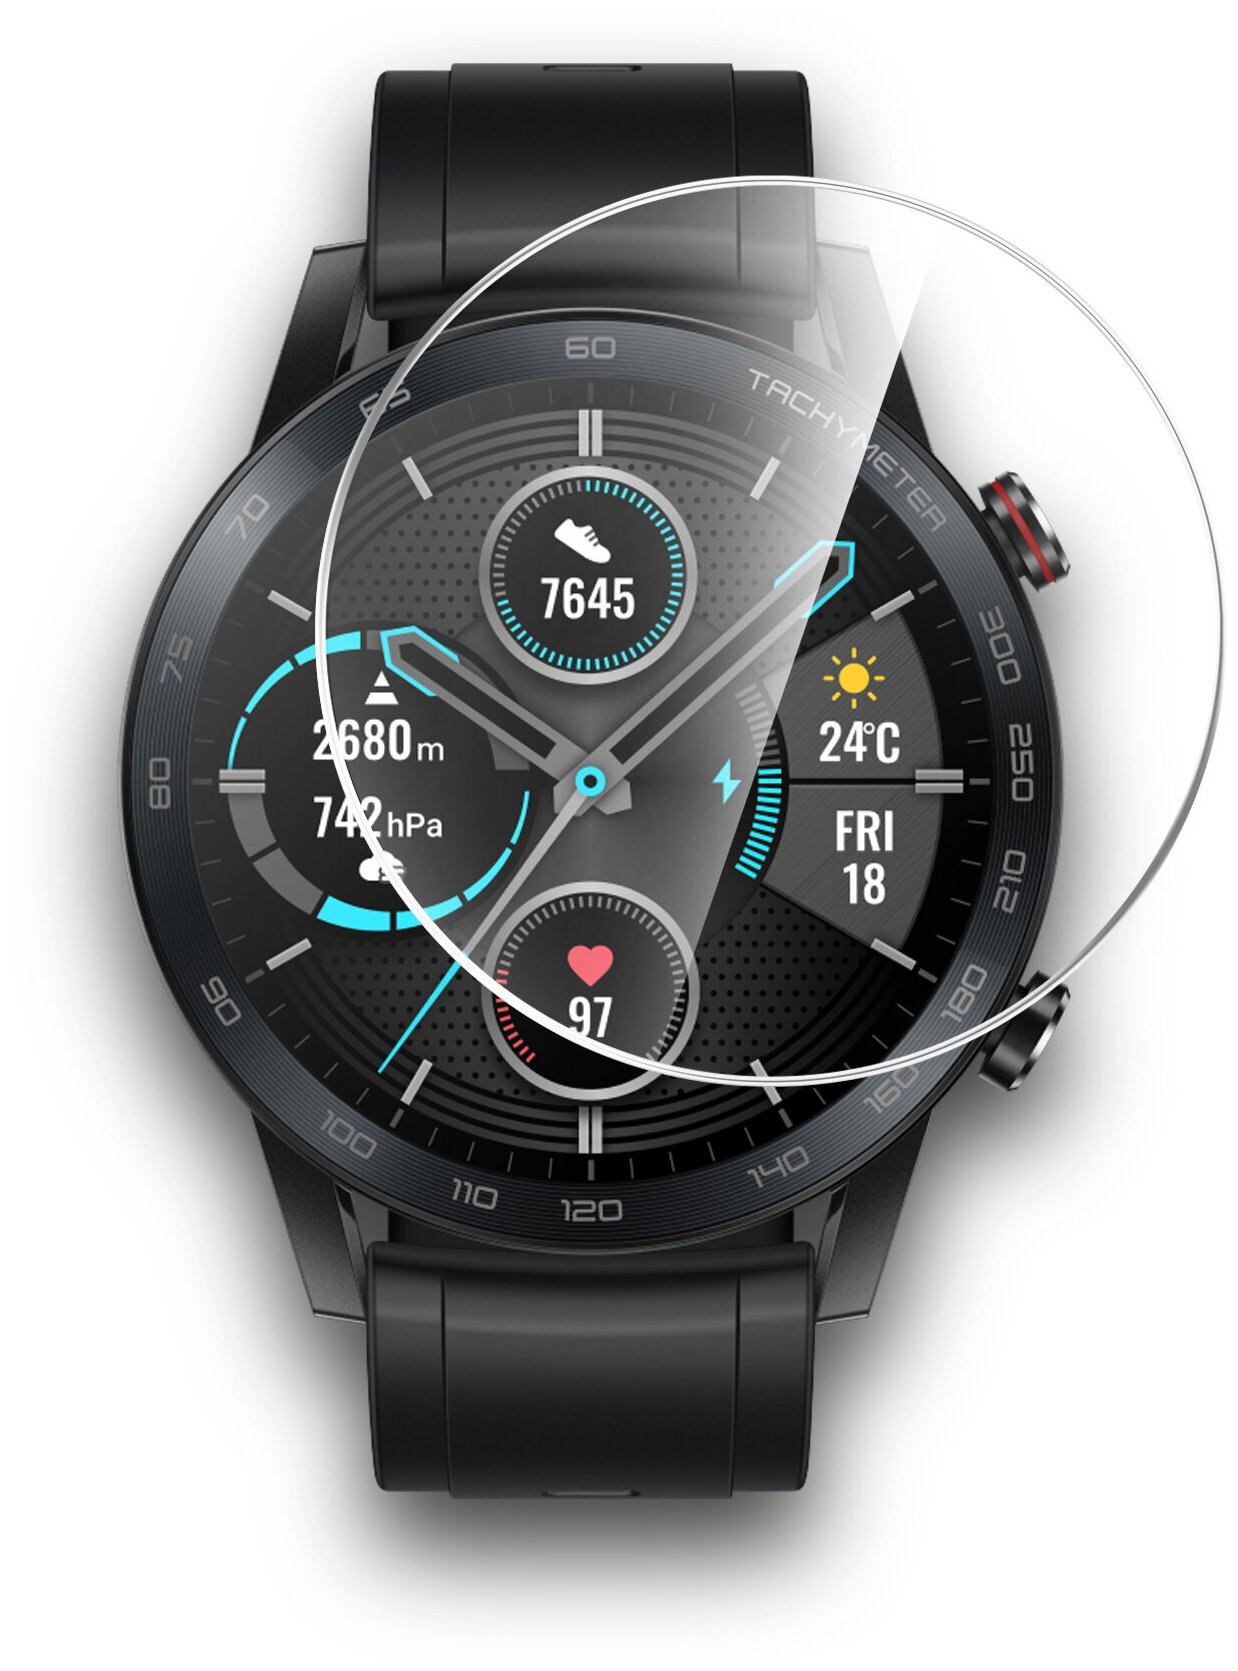 Защитная пленка на Honor Magic Watch 2 46mm/Huawei Watch GT2 46mm прозрачная гидрогелевая с олеофобным покрытием комплект 2 шт, Miuko